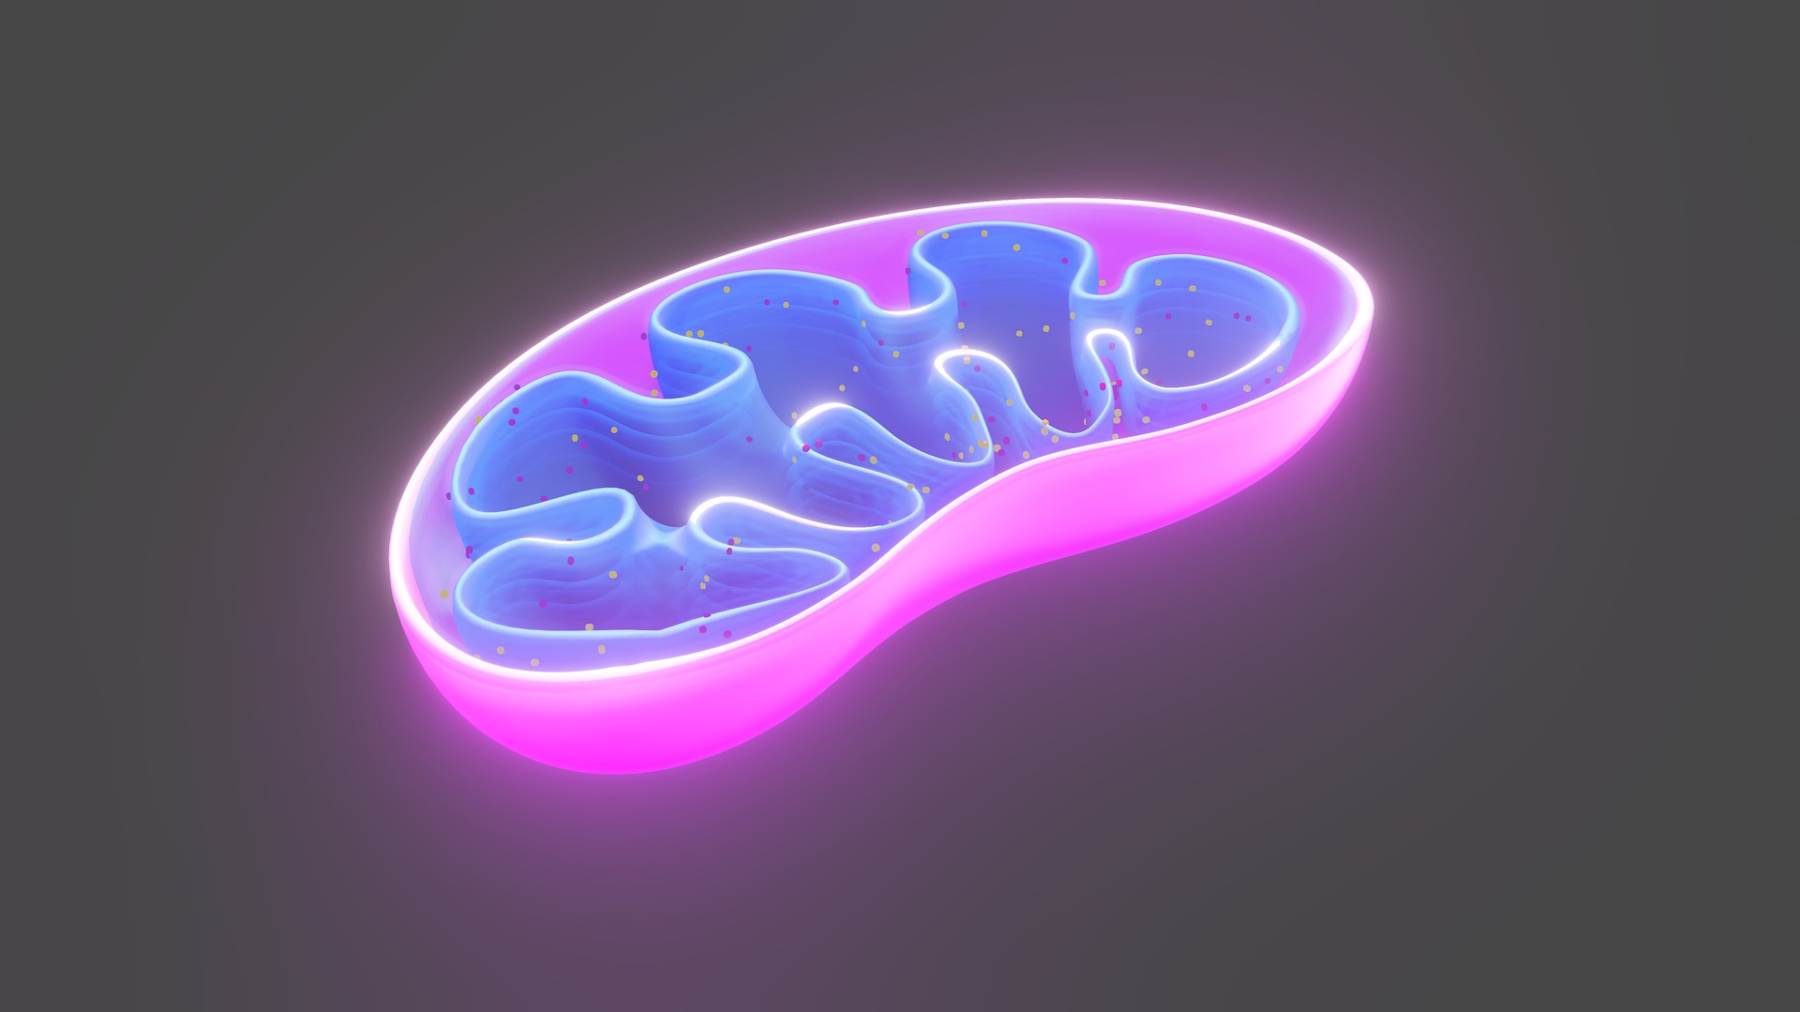 Las mitocondrias